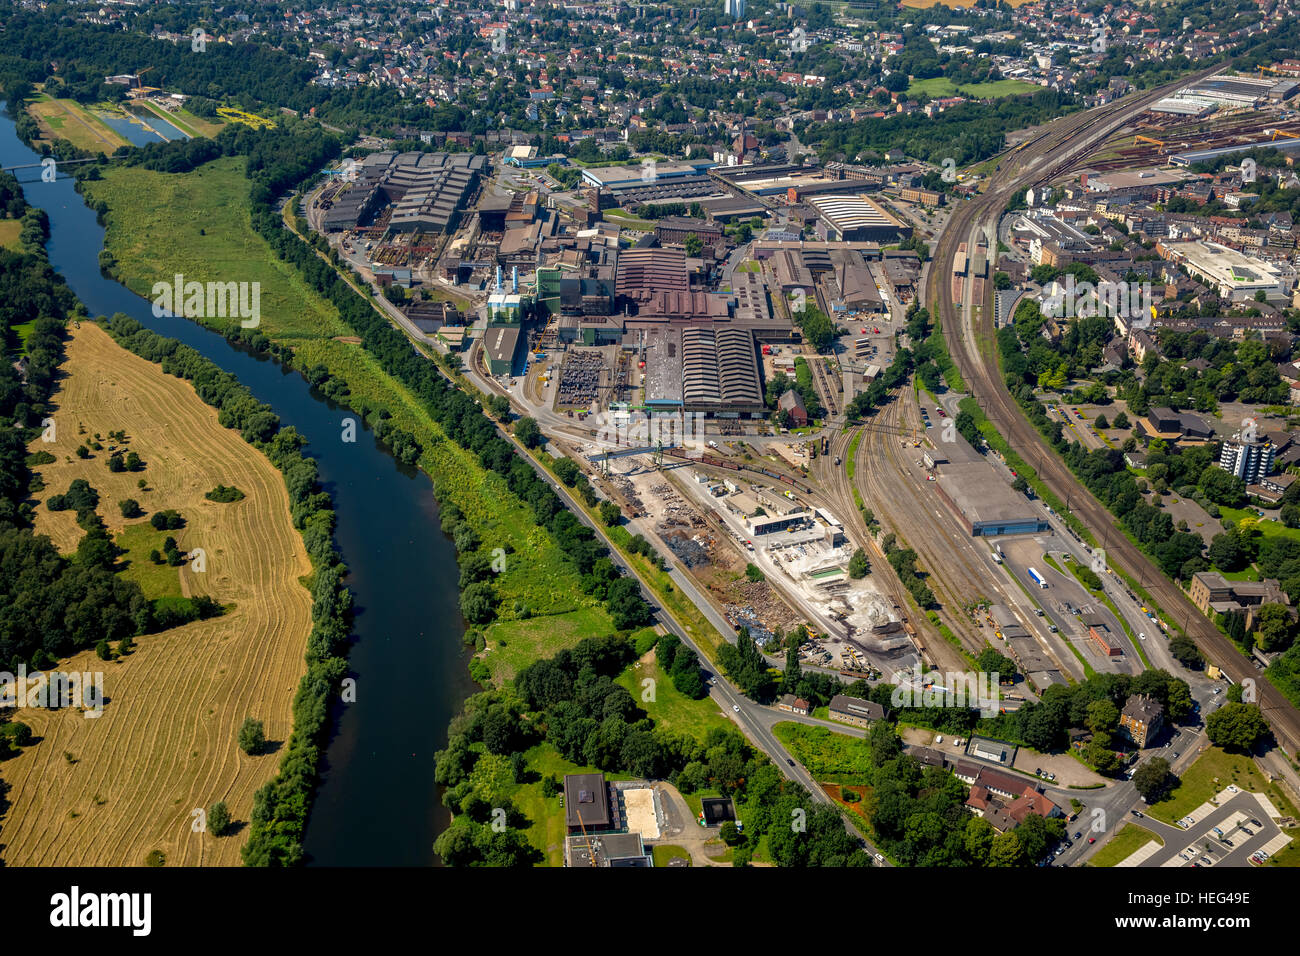 Vista aerea, il distretto industriale, Tedesco Edelstahlwerke GmbH, acciaierie e valle della Ruhr, Witten, Renania settentrionale-Vestfalia, Germania Foto Stock